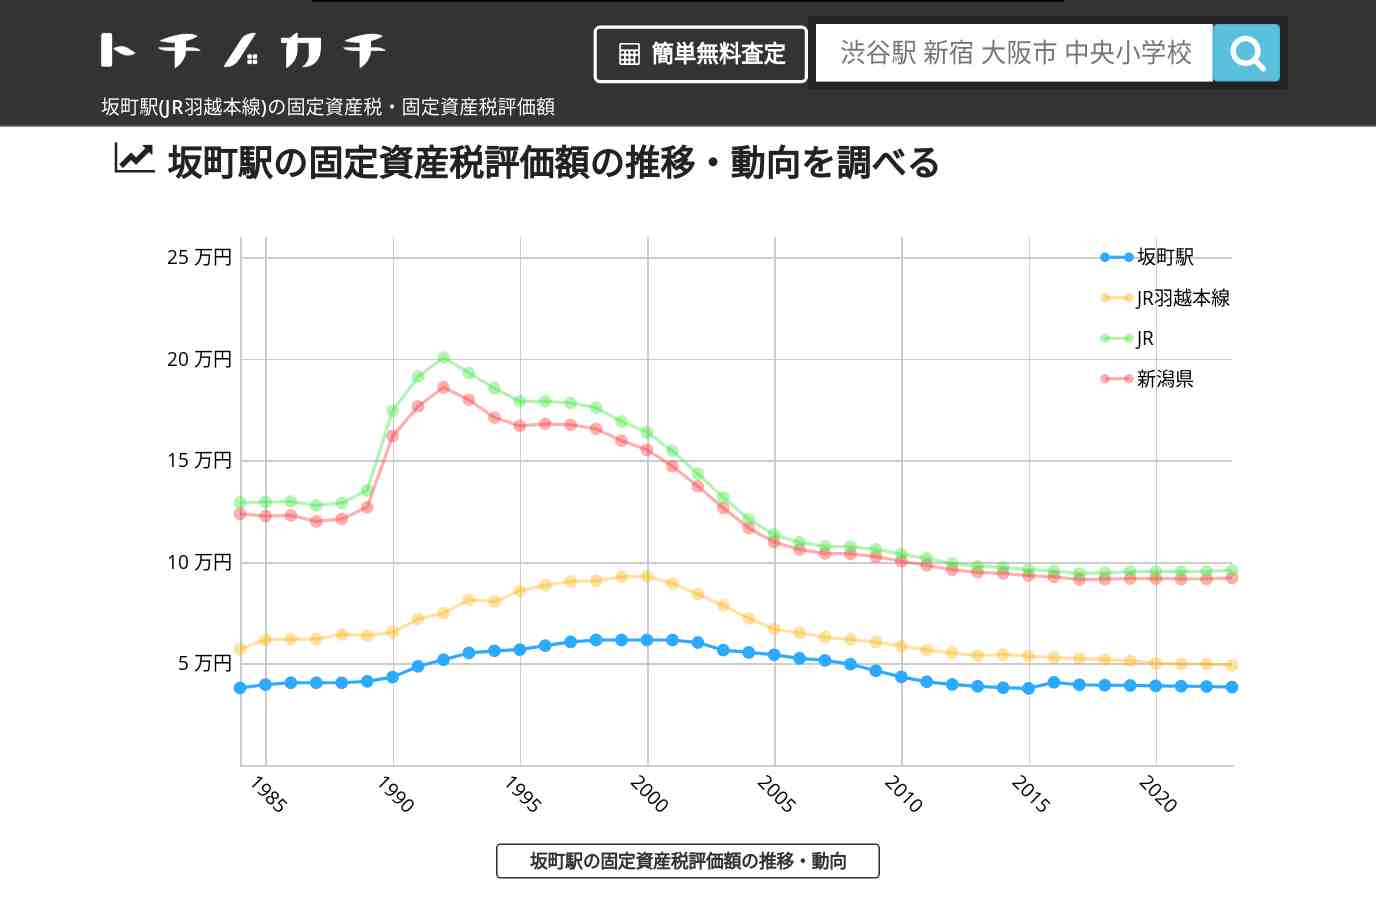 坂町駅(JR羽越本線)の固定資産税・固定資産税評価額 | トチノカチ